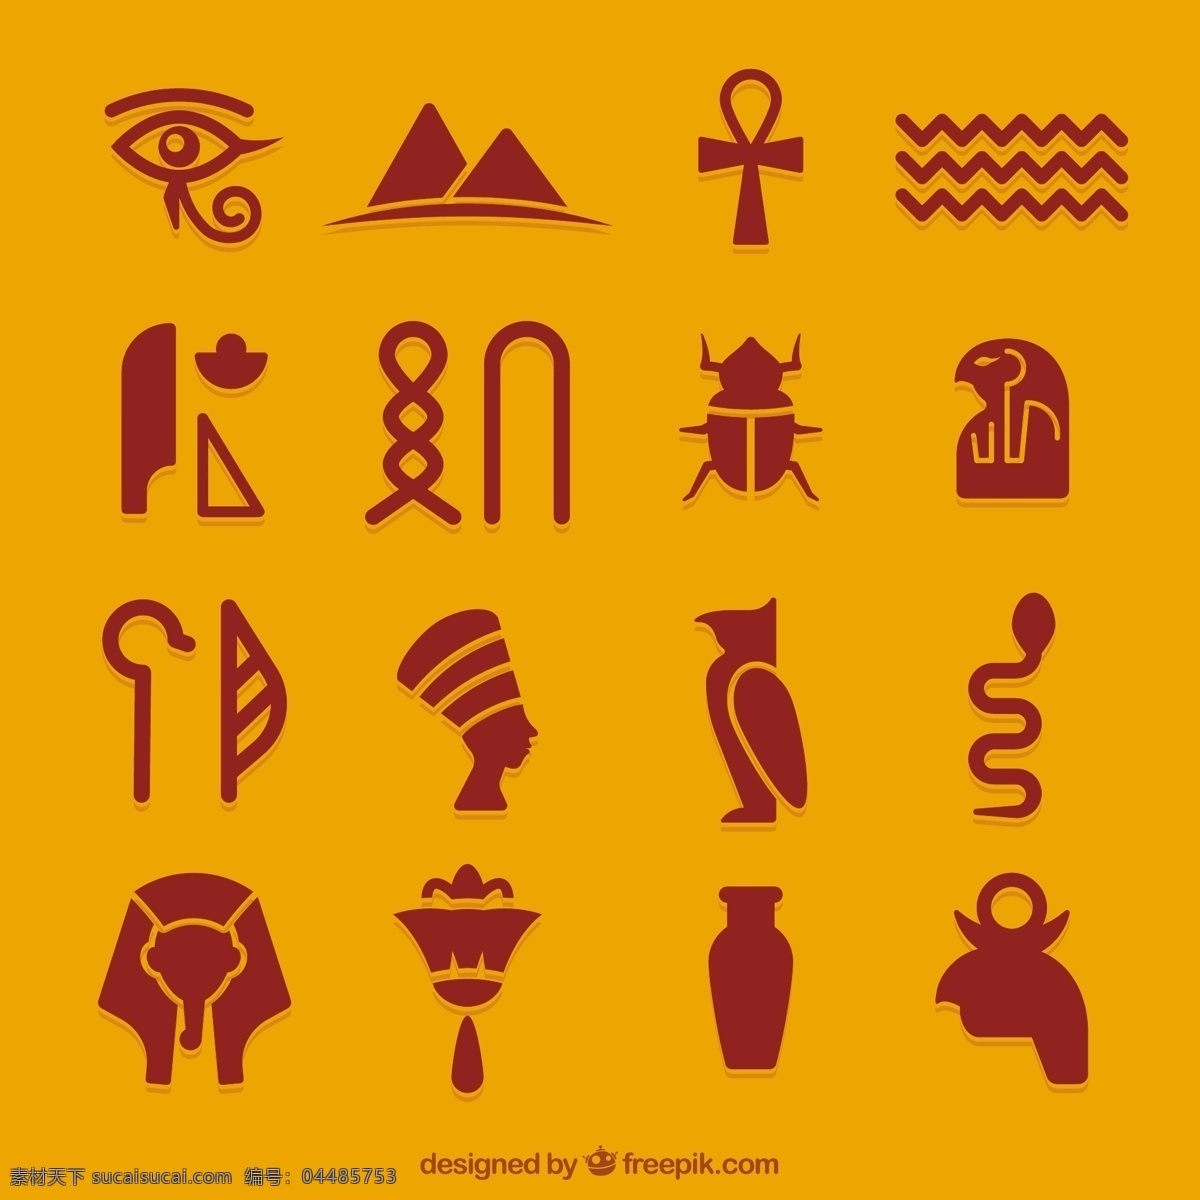 埃及的图标 图标 沙漠 沙 金字塔 埃及文化 神 埃及 古老的金字塔 绿洲 法老 狮身人面像 神话 荷鲁斯 象形文字 ra 阿努比斯 橙色